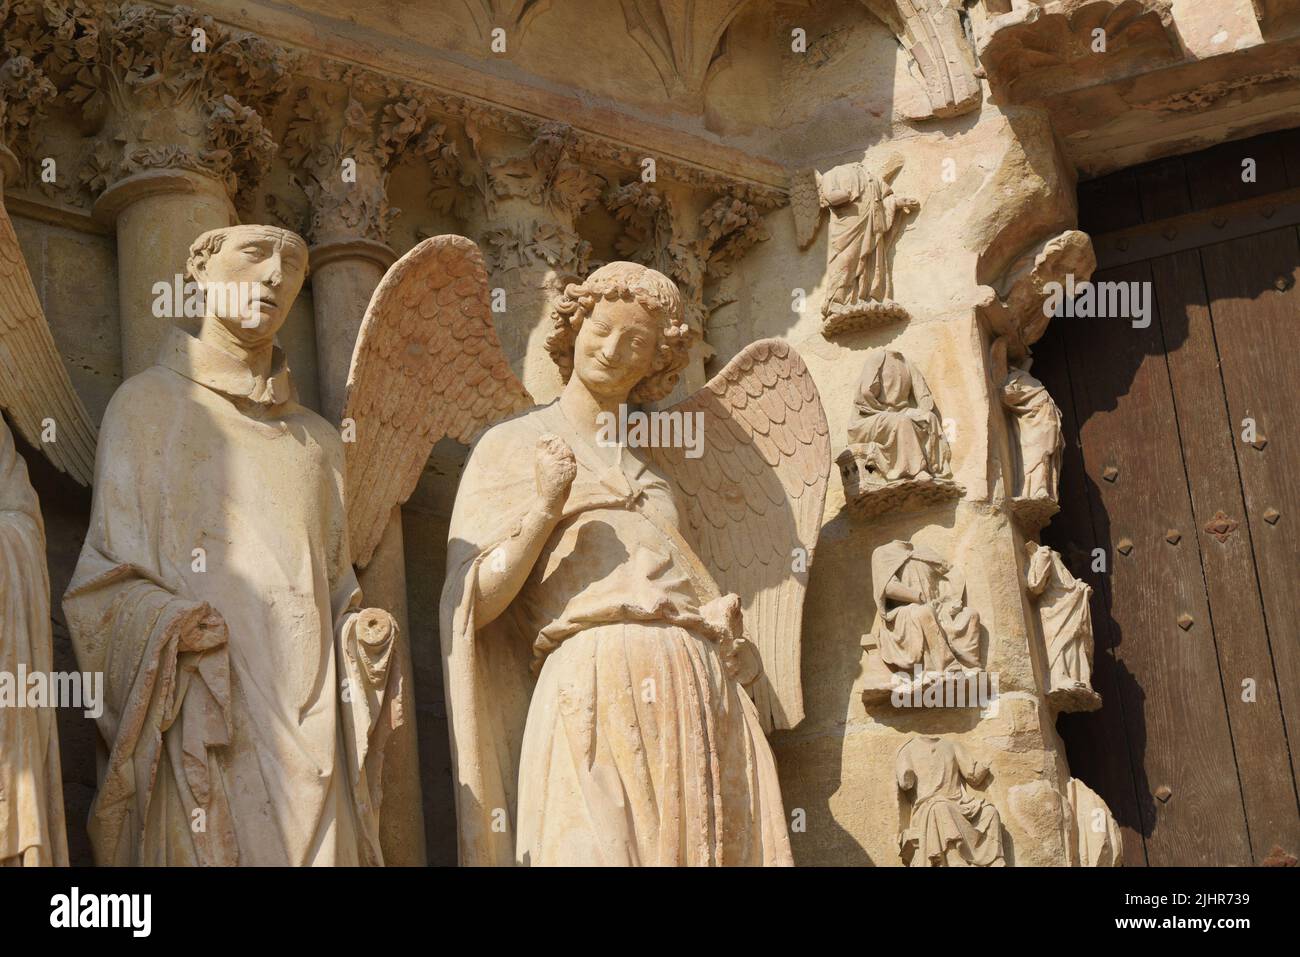 Frankreich, Region Grand Est, Marne, Reims, Kathedrale Notre-Dame, nordseite, Nordportal, lächelnder Engel Stockfoto